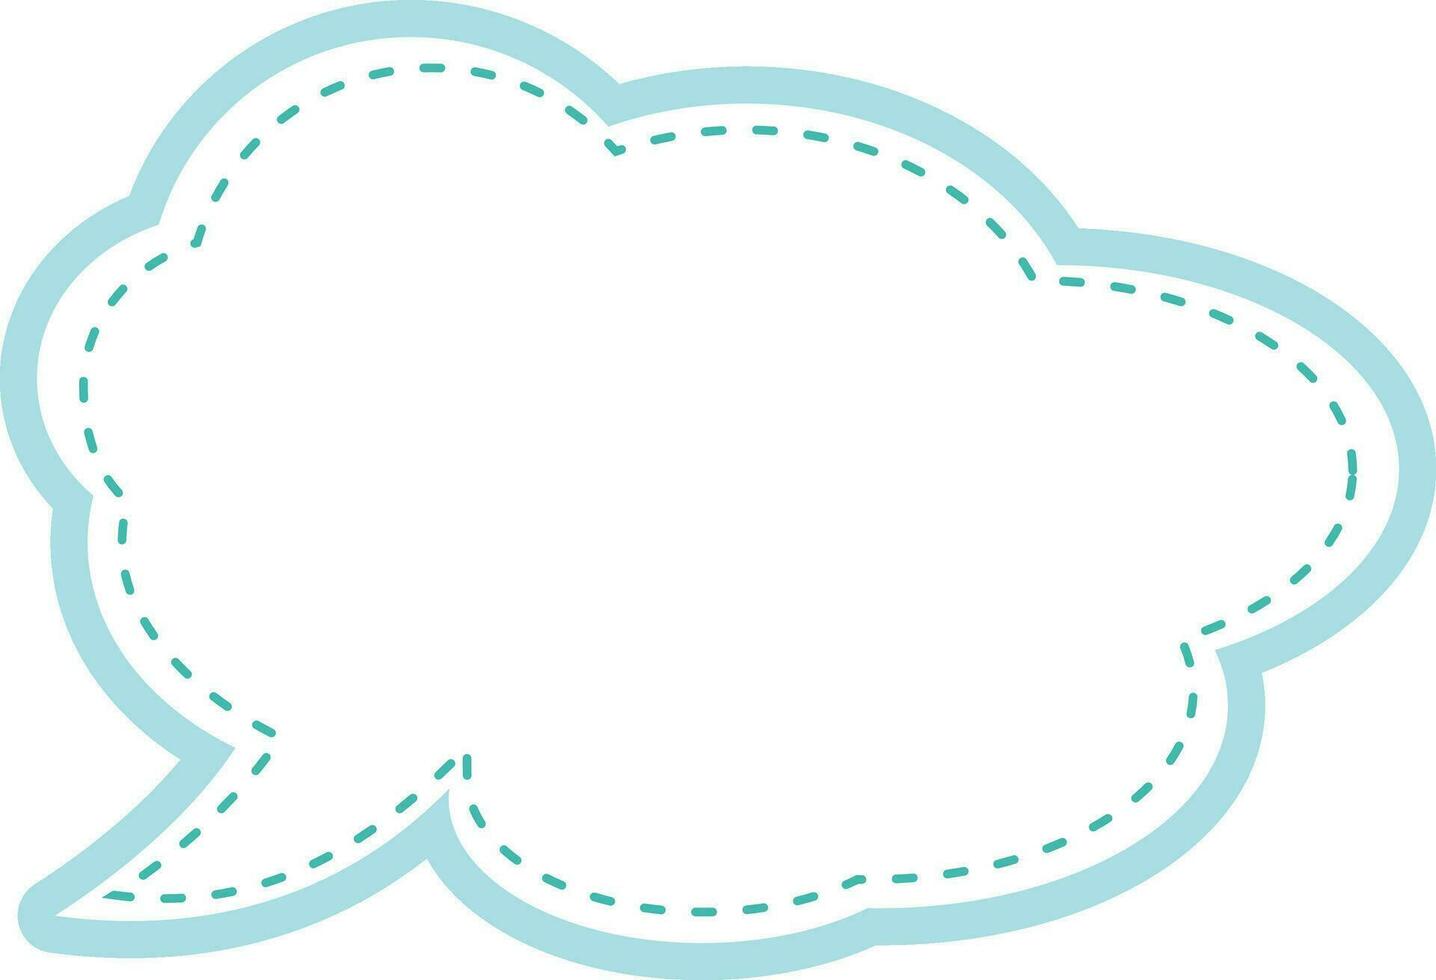 Speech bubble in cloud shape. vector